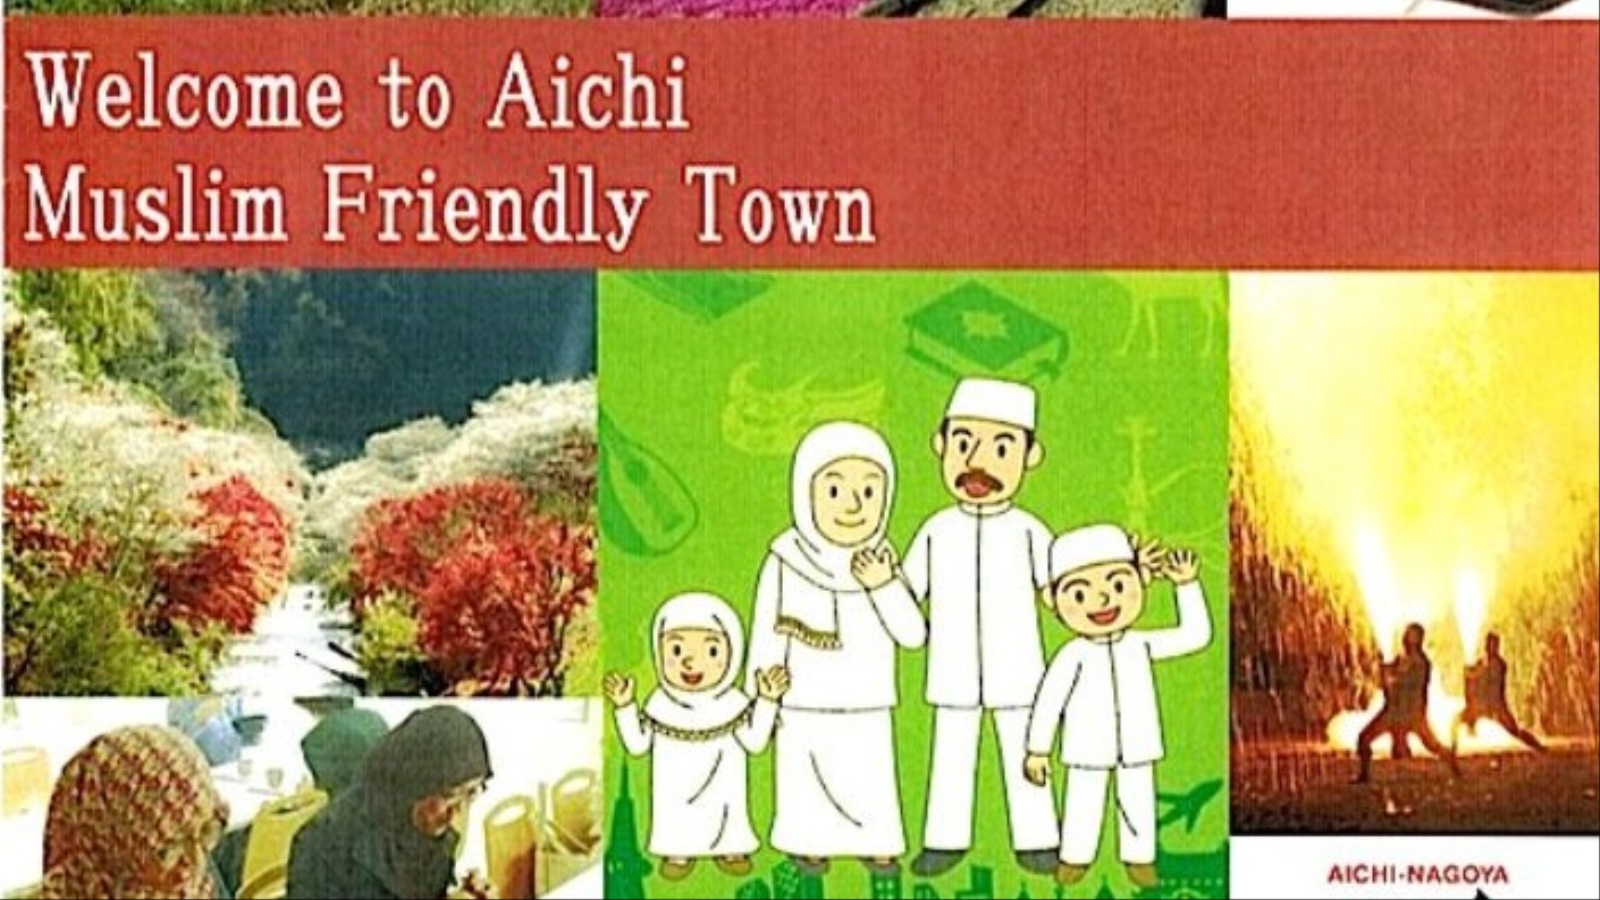 دليل آيتشي يشرح لليابانيين كيف يحسنون استقبال السياح المسلمين